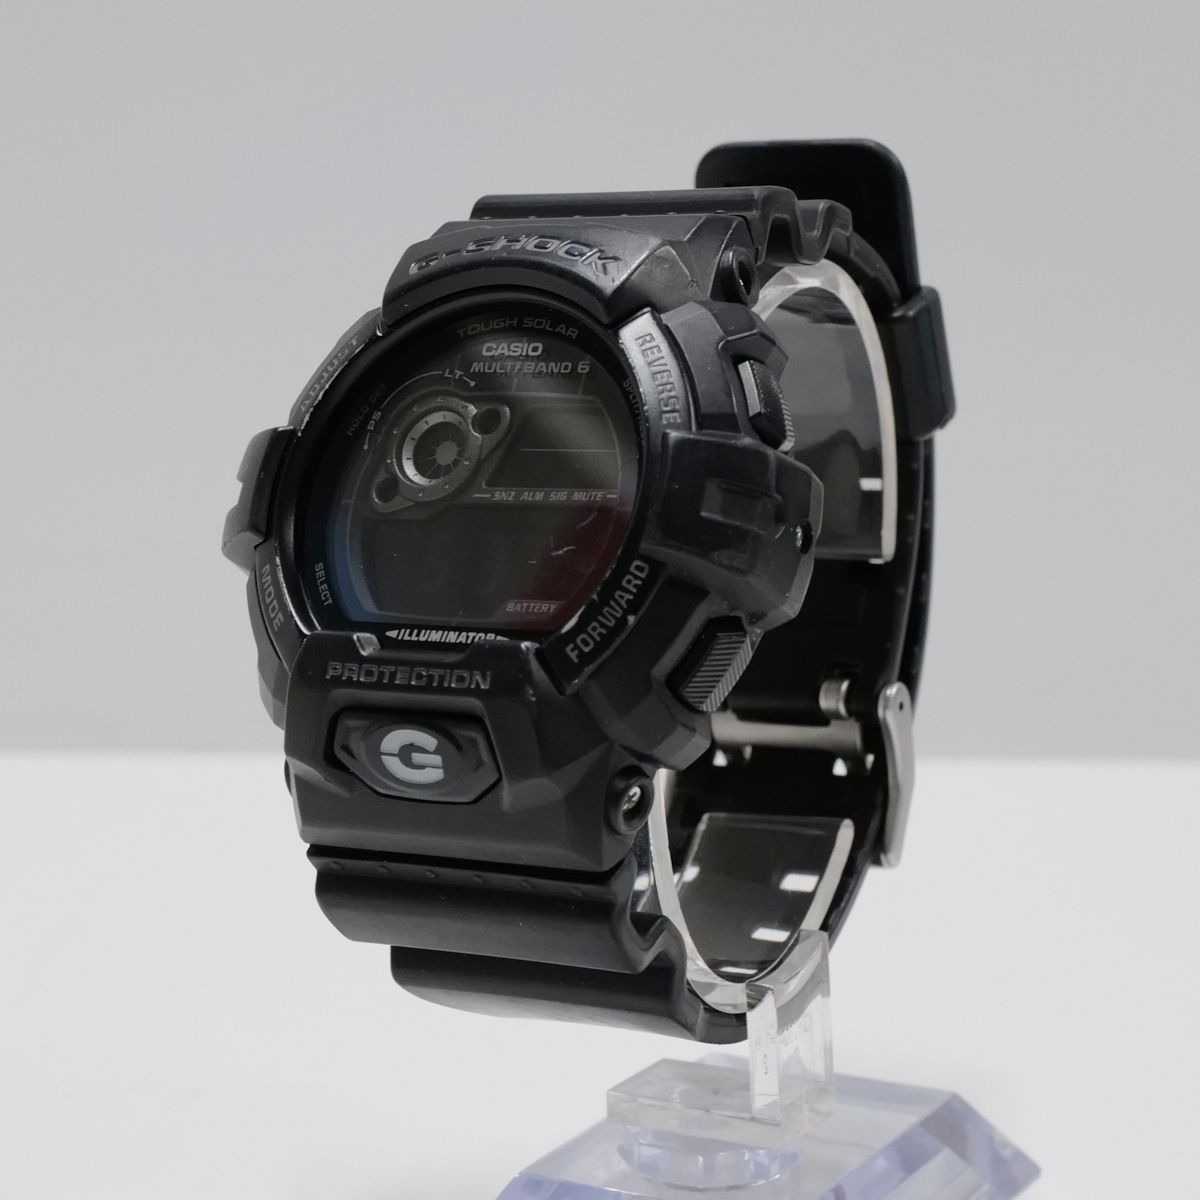 CASIO G-SHOCK GW-8900A メンズ 腕時計 USED品 電波ソーラー